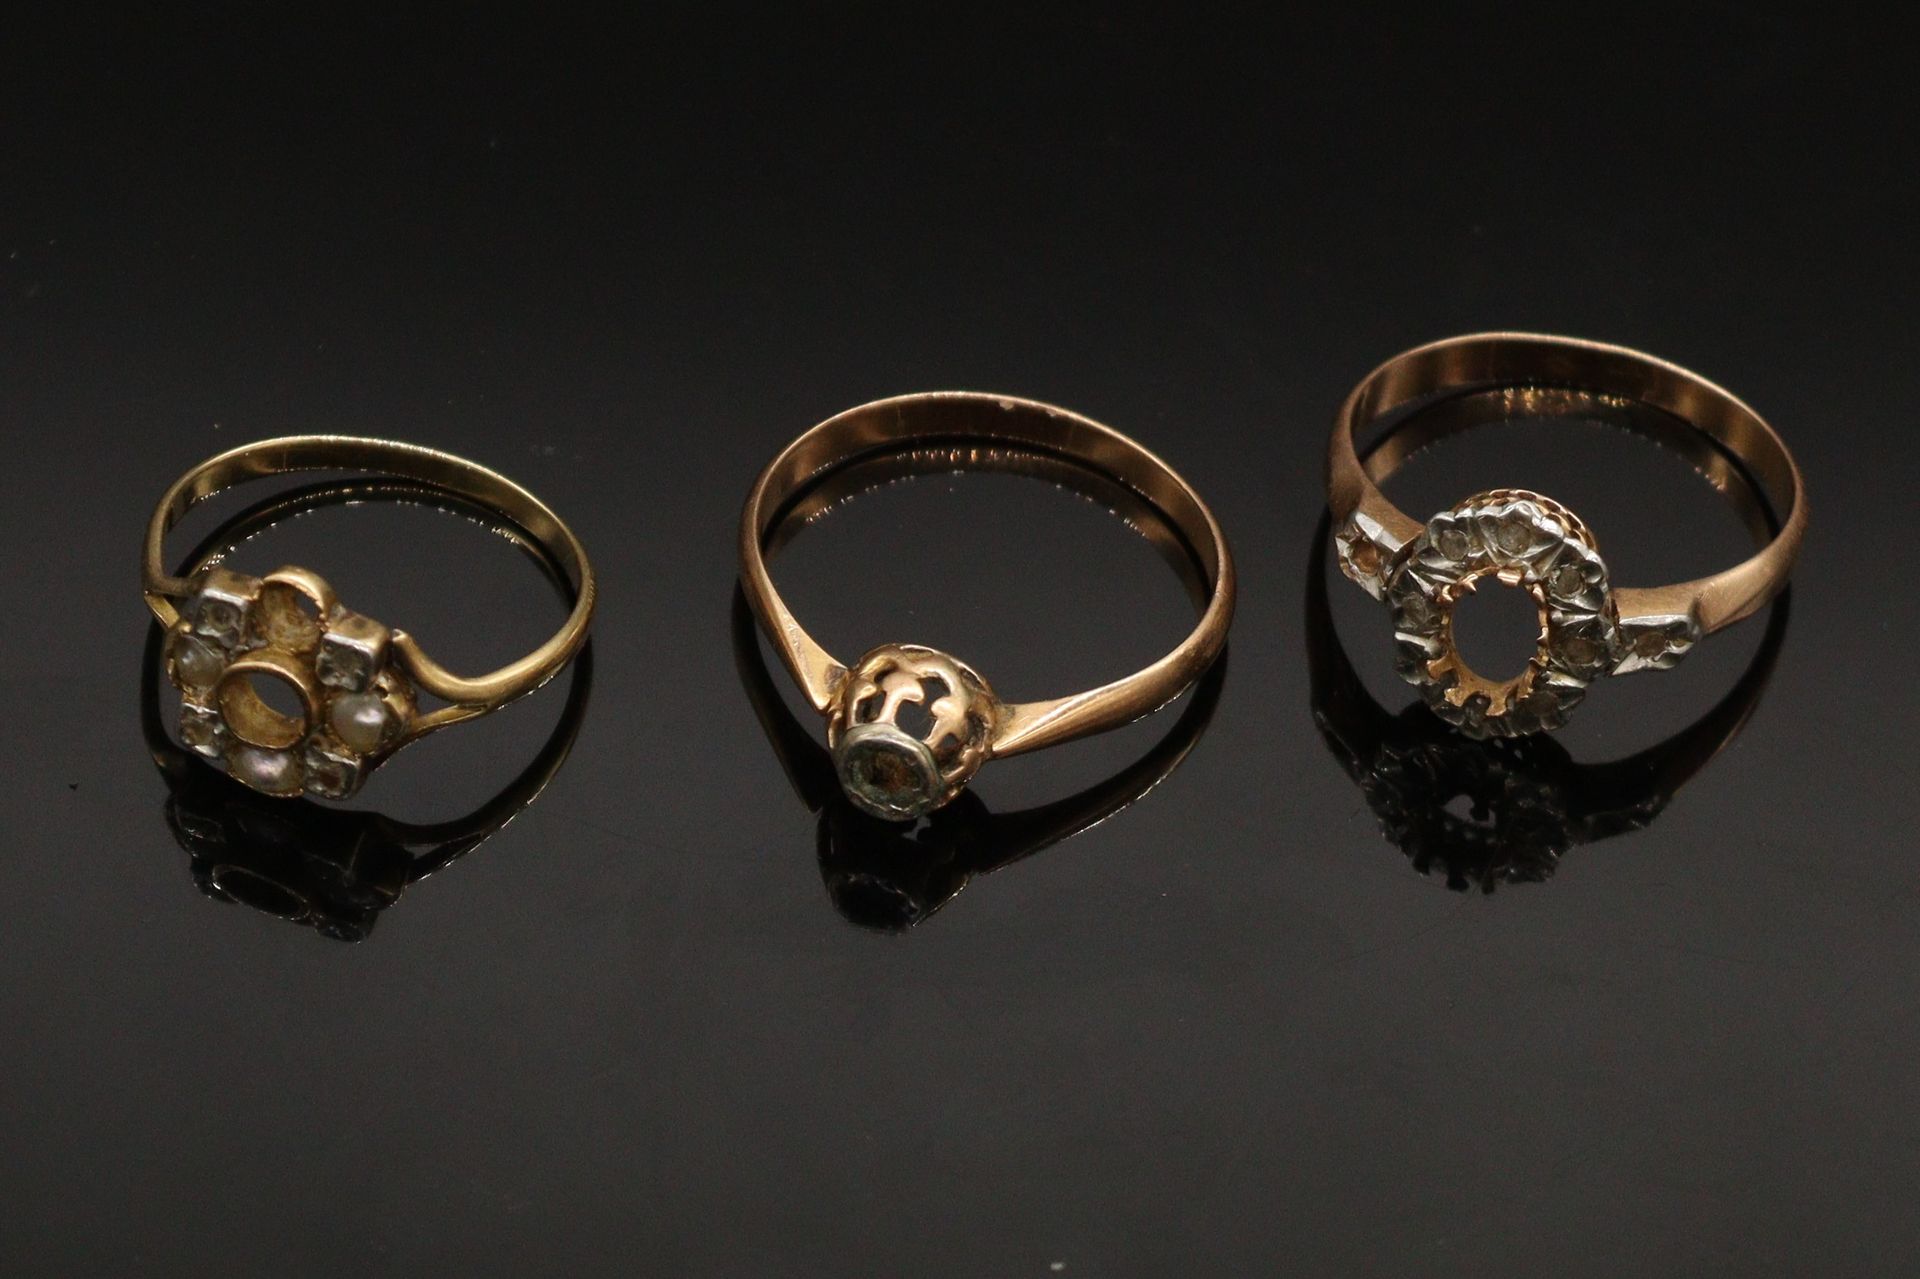 Null 碎片：三个18K(750)黄金和白金戒指镶嵌，其中两个镶嵌了小钻石。



毛重：5.10克。